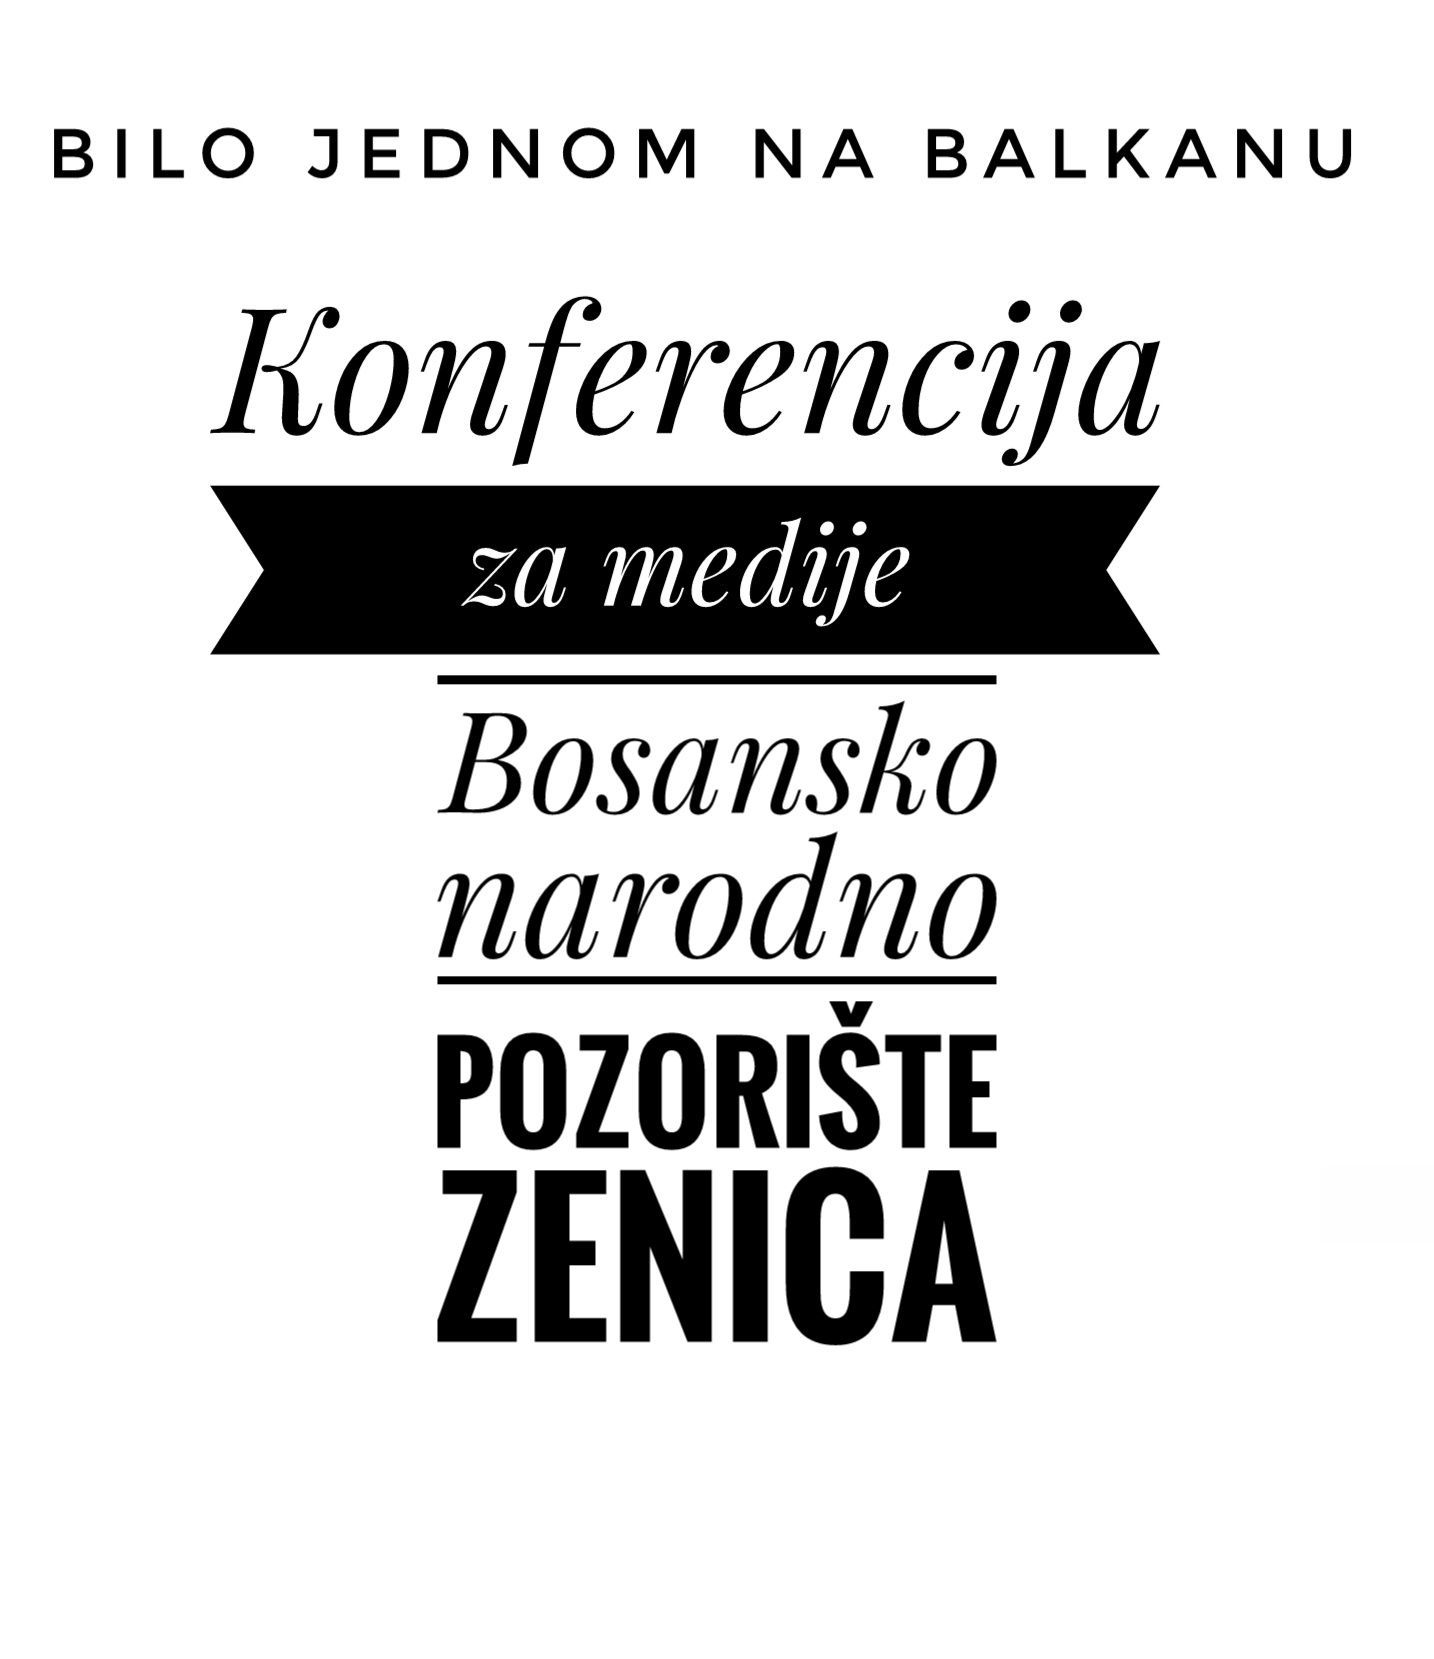 Sutra konferencija za medije u Bosanskom narodnom pozorištu Zenica povodom gostovanja koncerta “Bilo jednom na Balkanu”